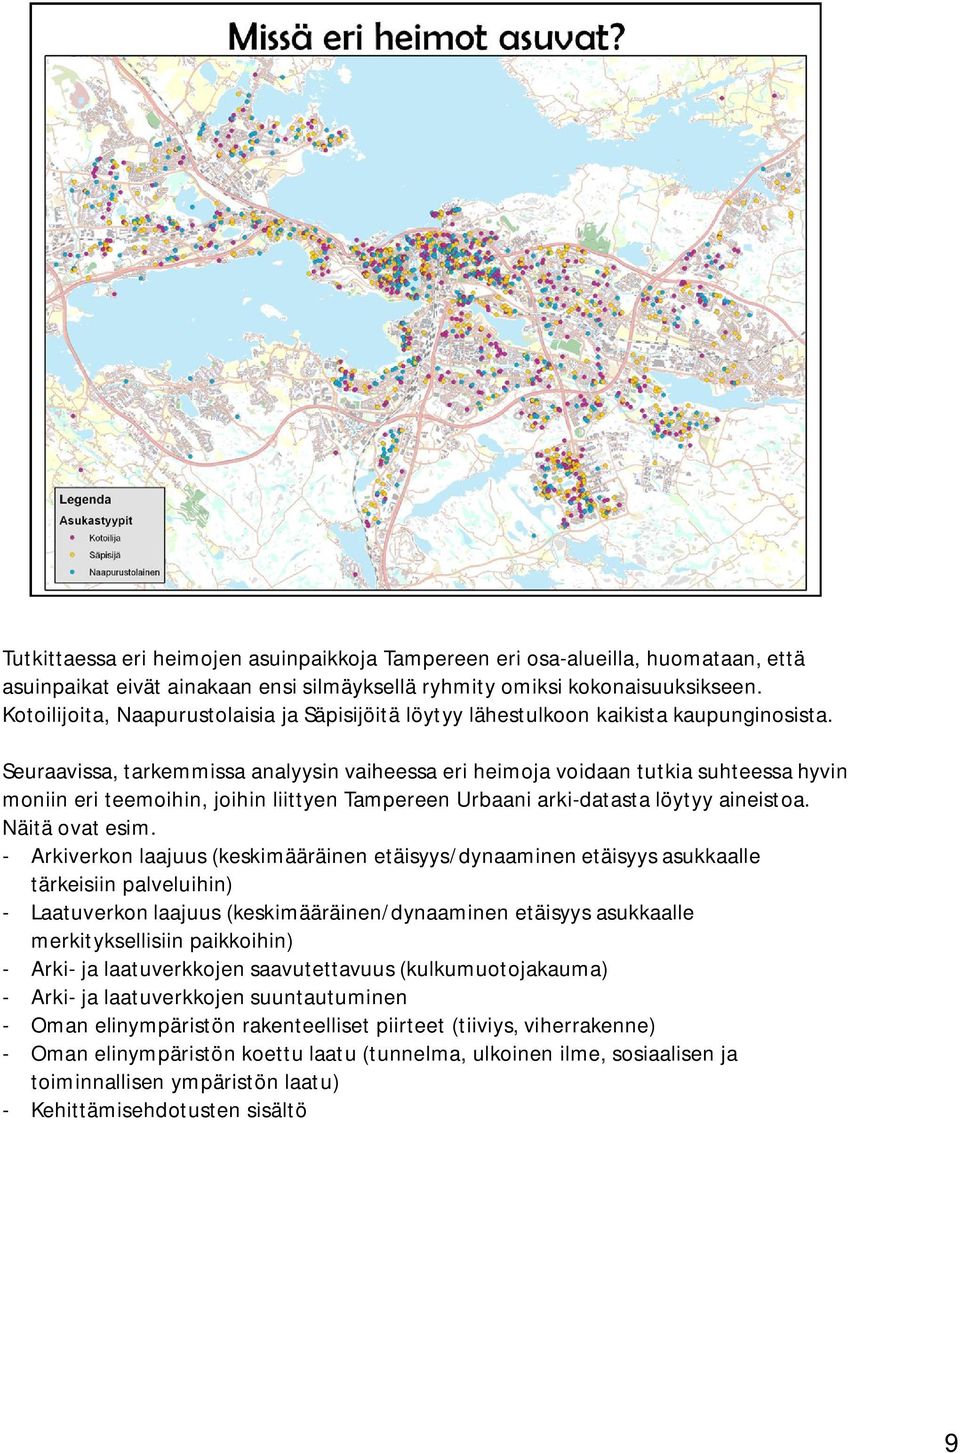 Seuraavissa, tarkemmissa analyysin vaiheessa eri heimoja voidaan tutkia suhteessa hyvin moniin eri teemoihin, joihin liittyen Tampereen Urbaani arki-datasta löytyy aineistoa. Näitä ovat esim.